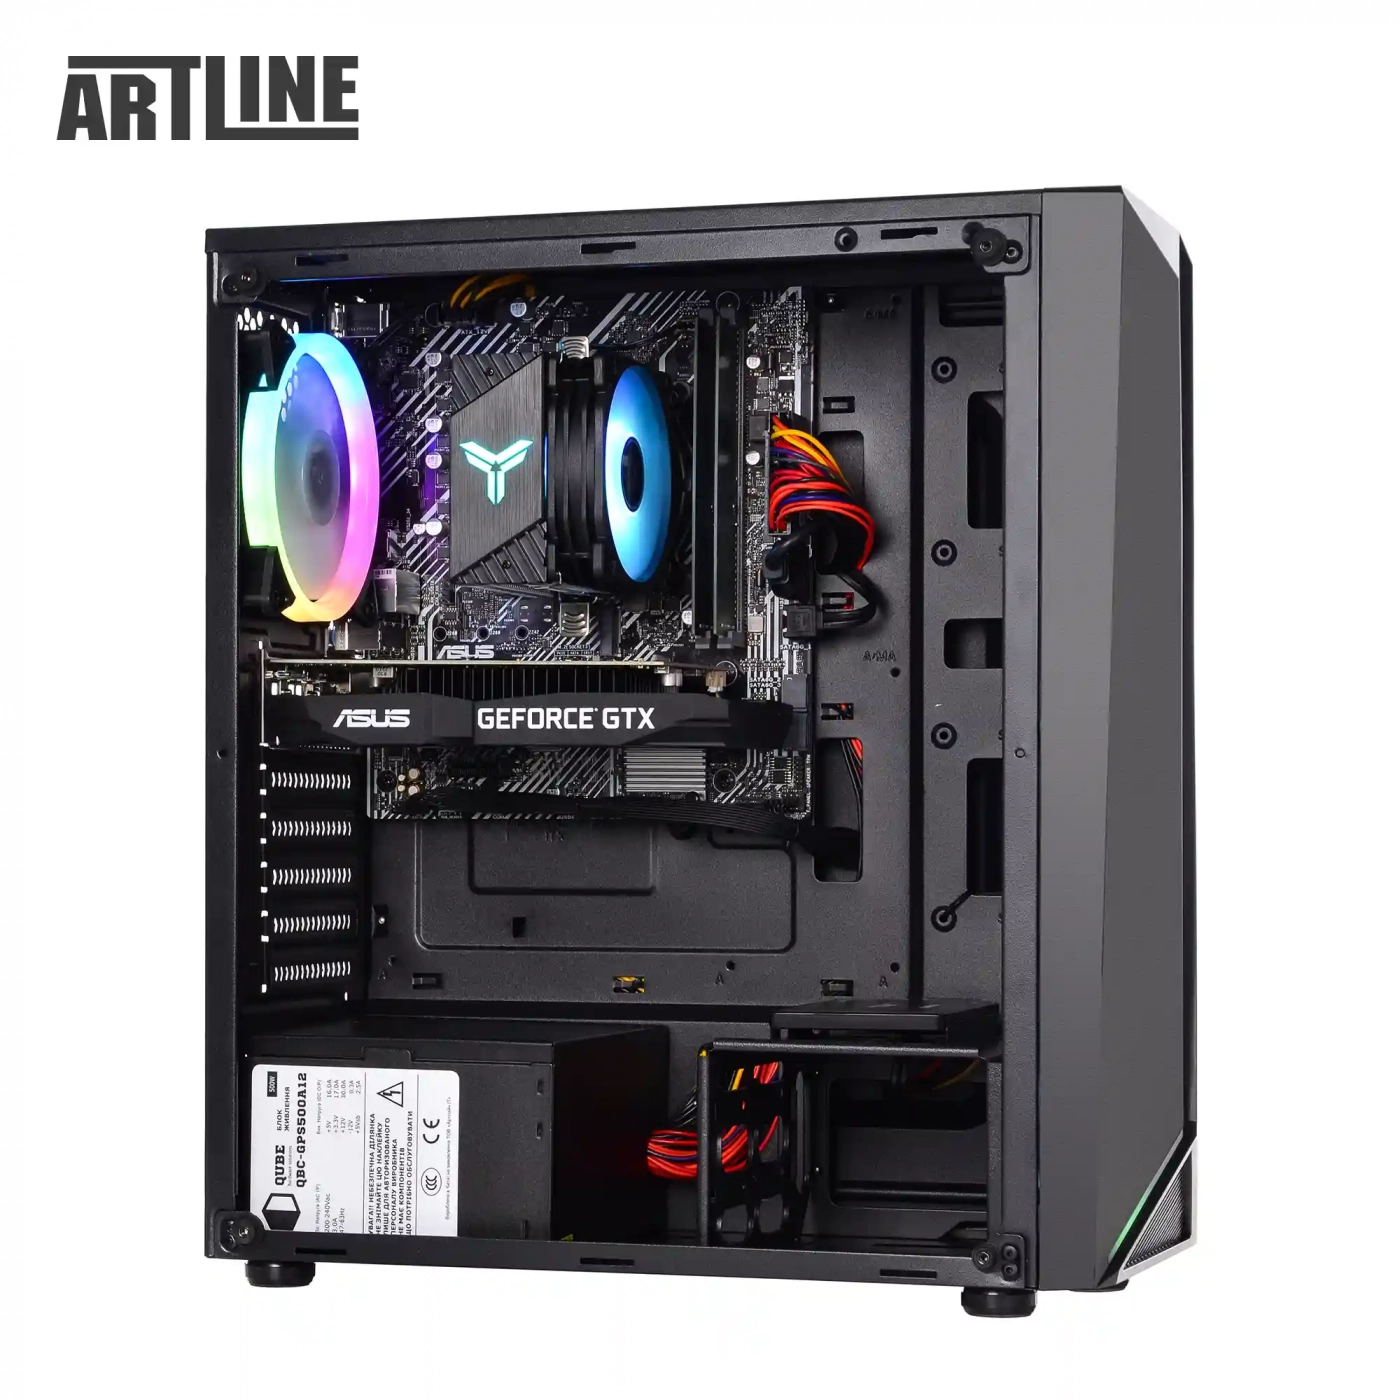 Купить Компьютер ARTLINE Gaming X43v35 - фото 8